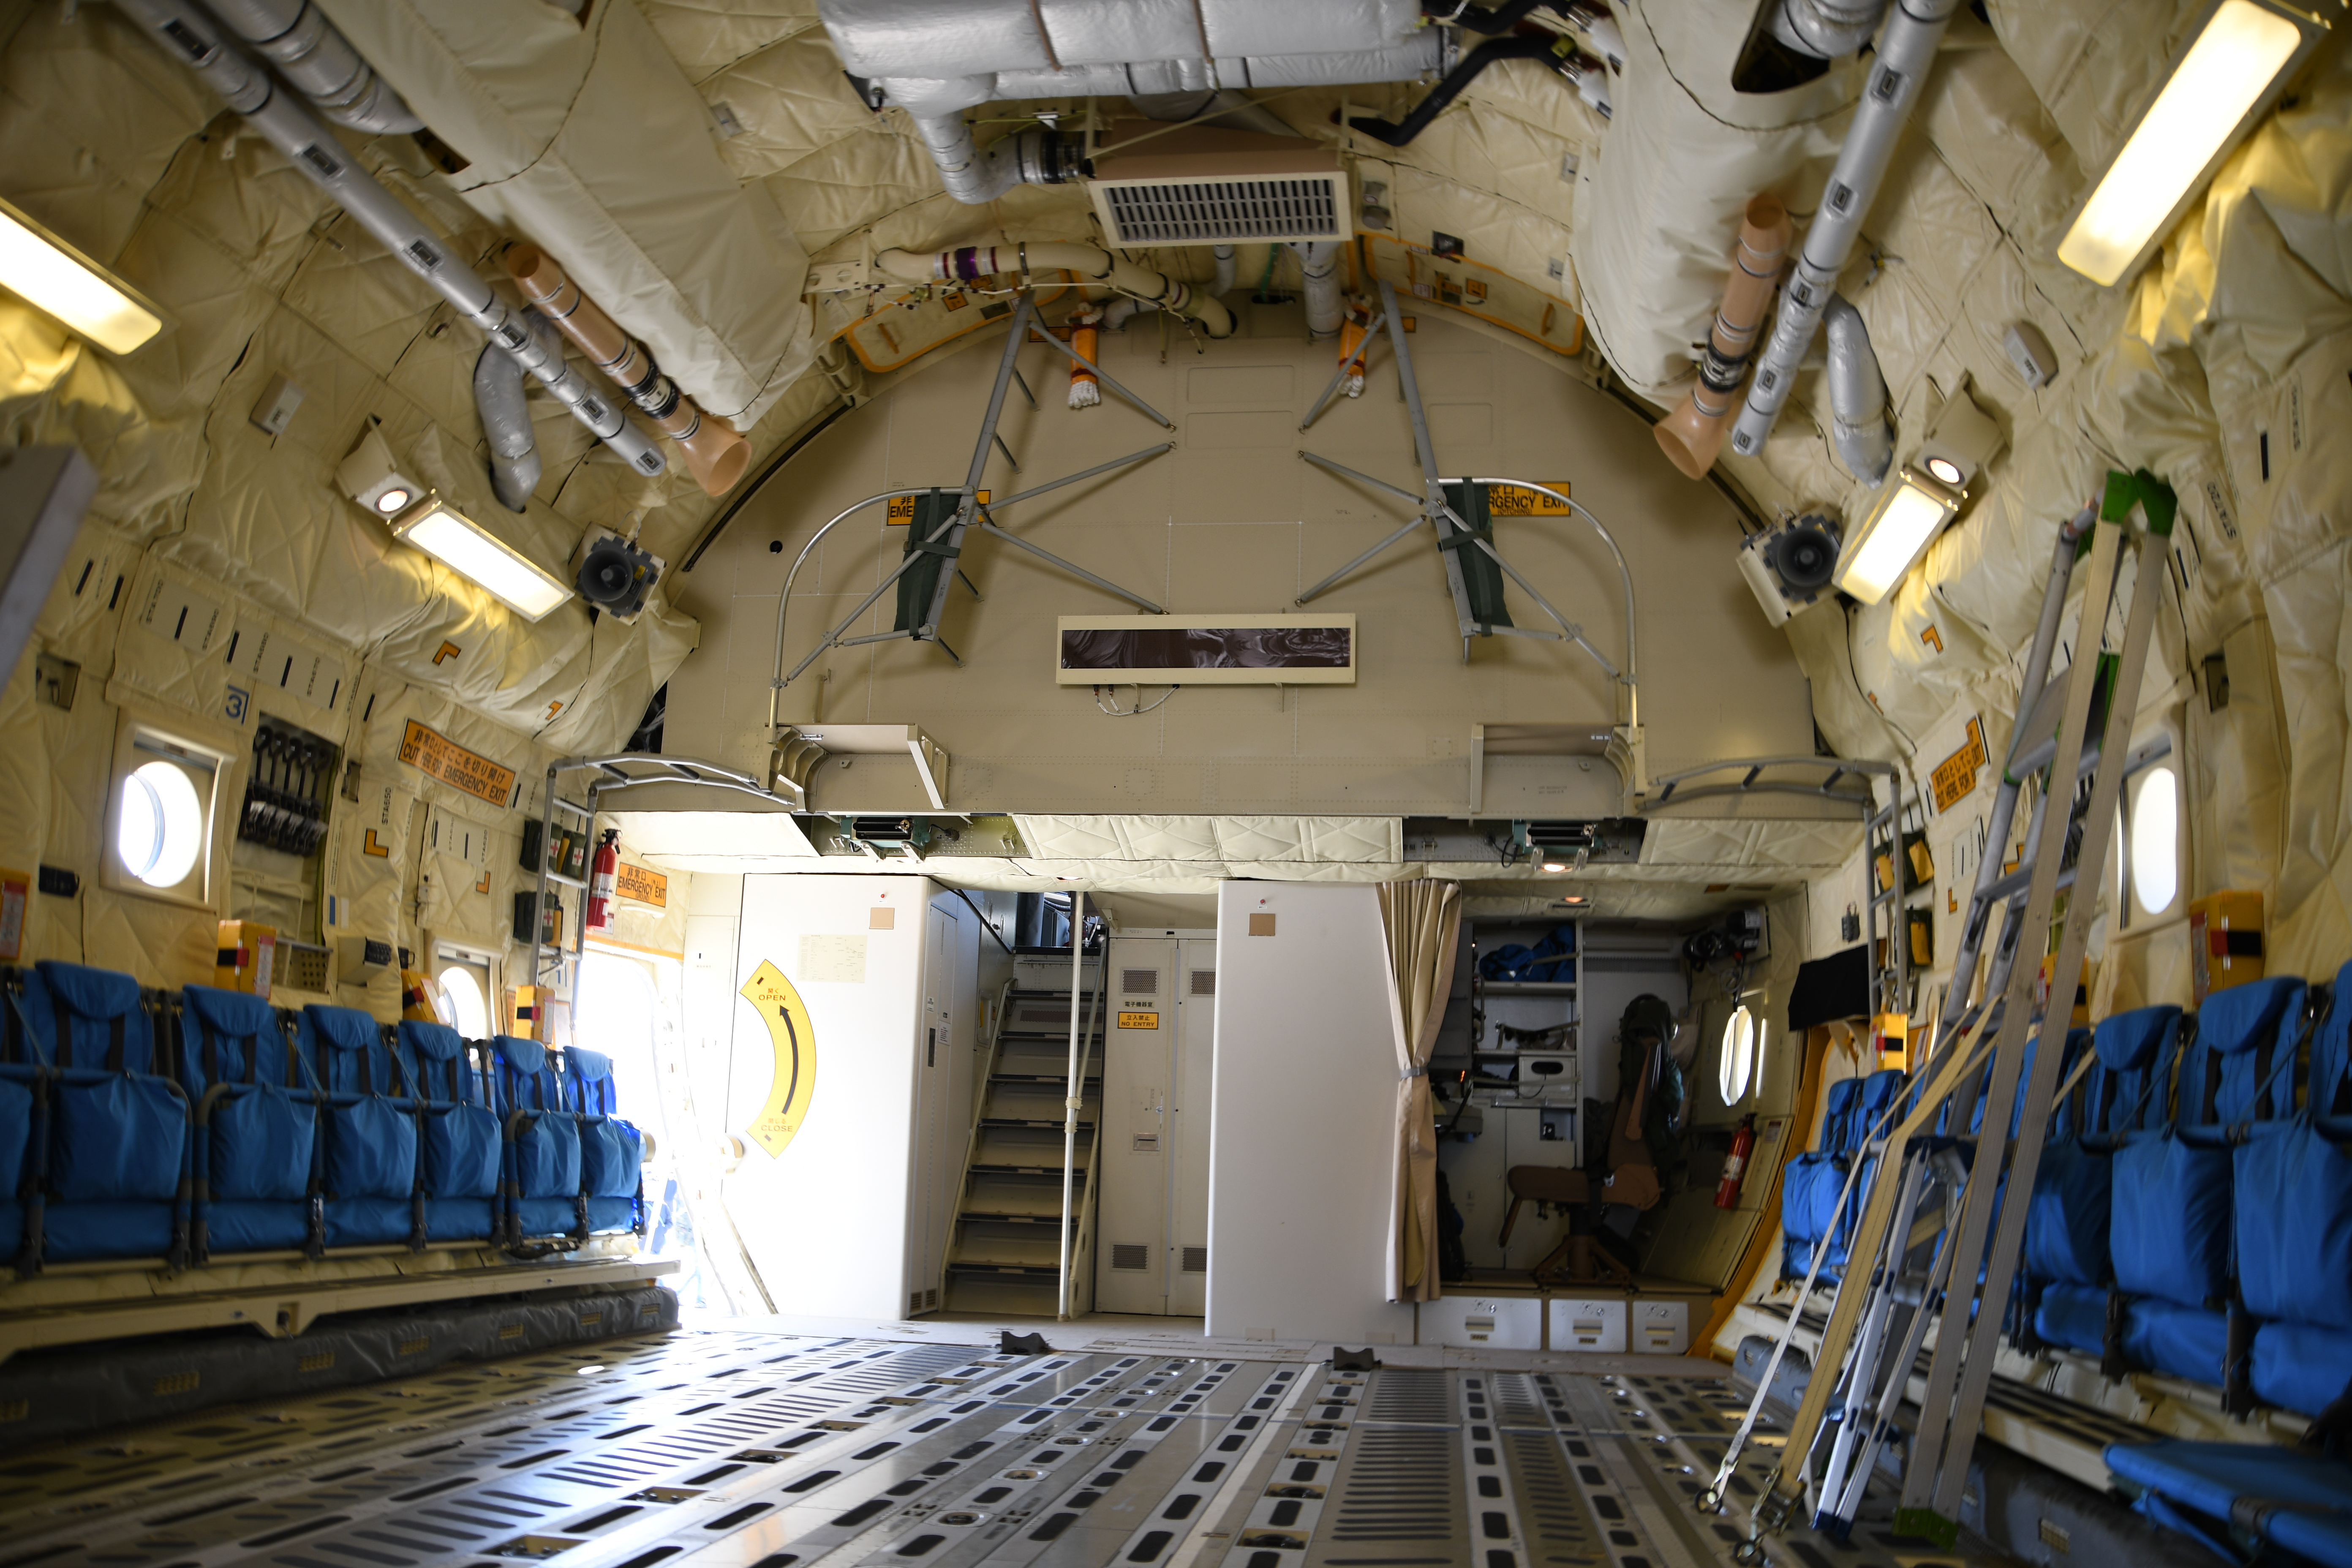 Российская 78 1. Cargo compartment. A330 Cargo compartment. A330 Bulk Cargo compartment. Cargo compartment Scrivet photo.